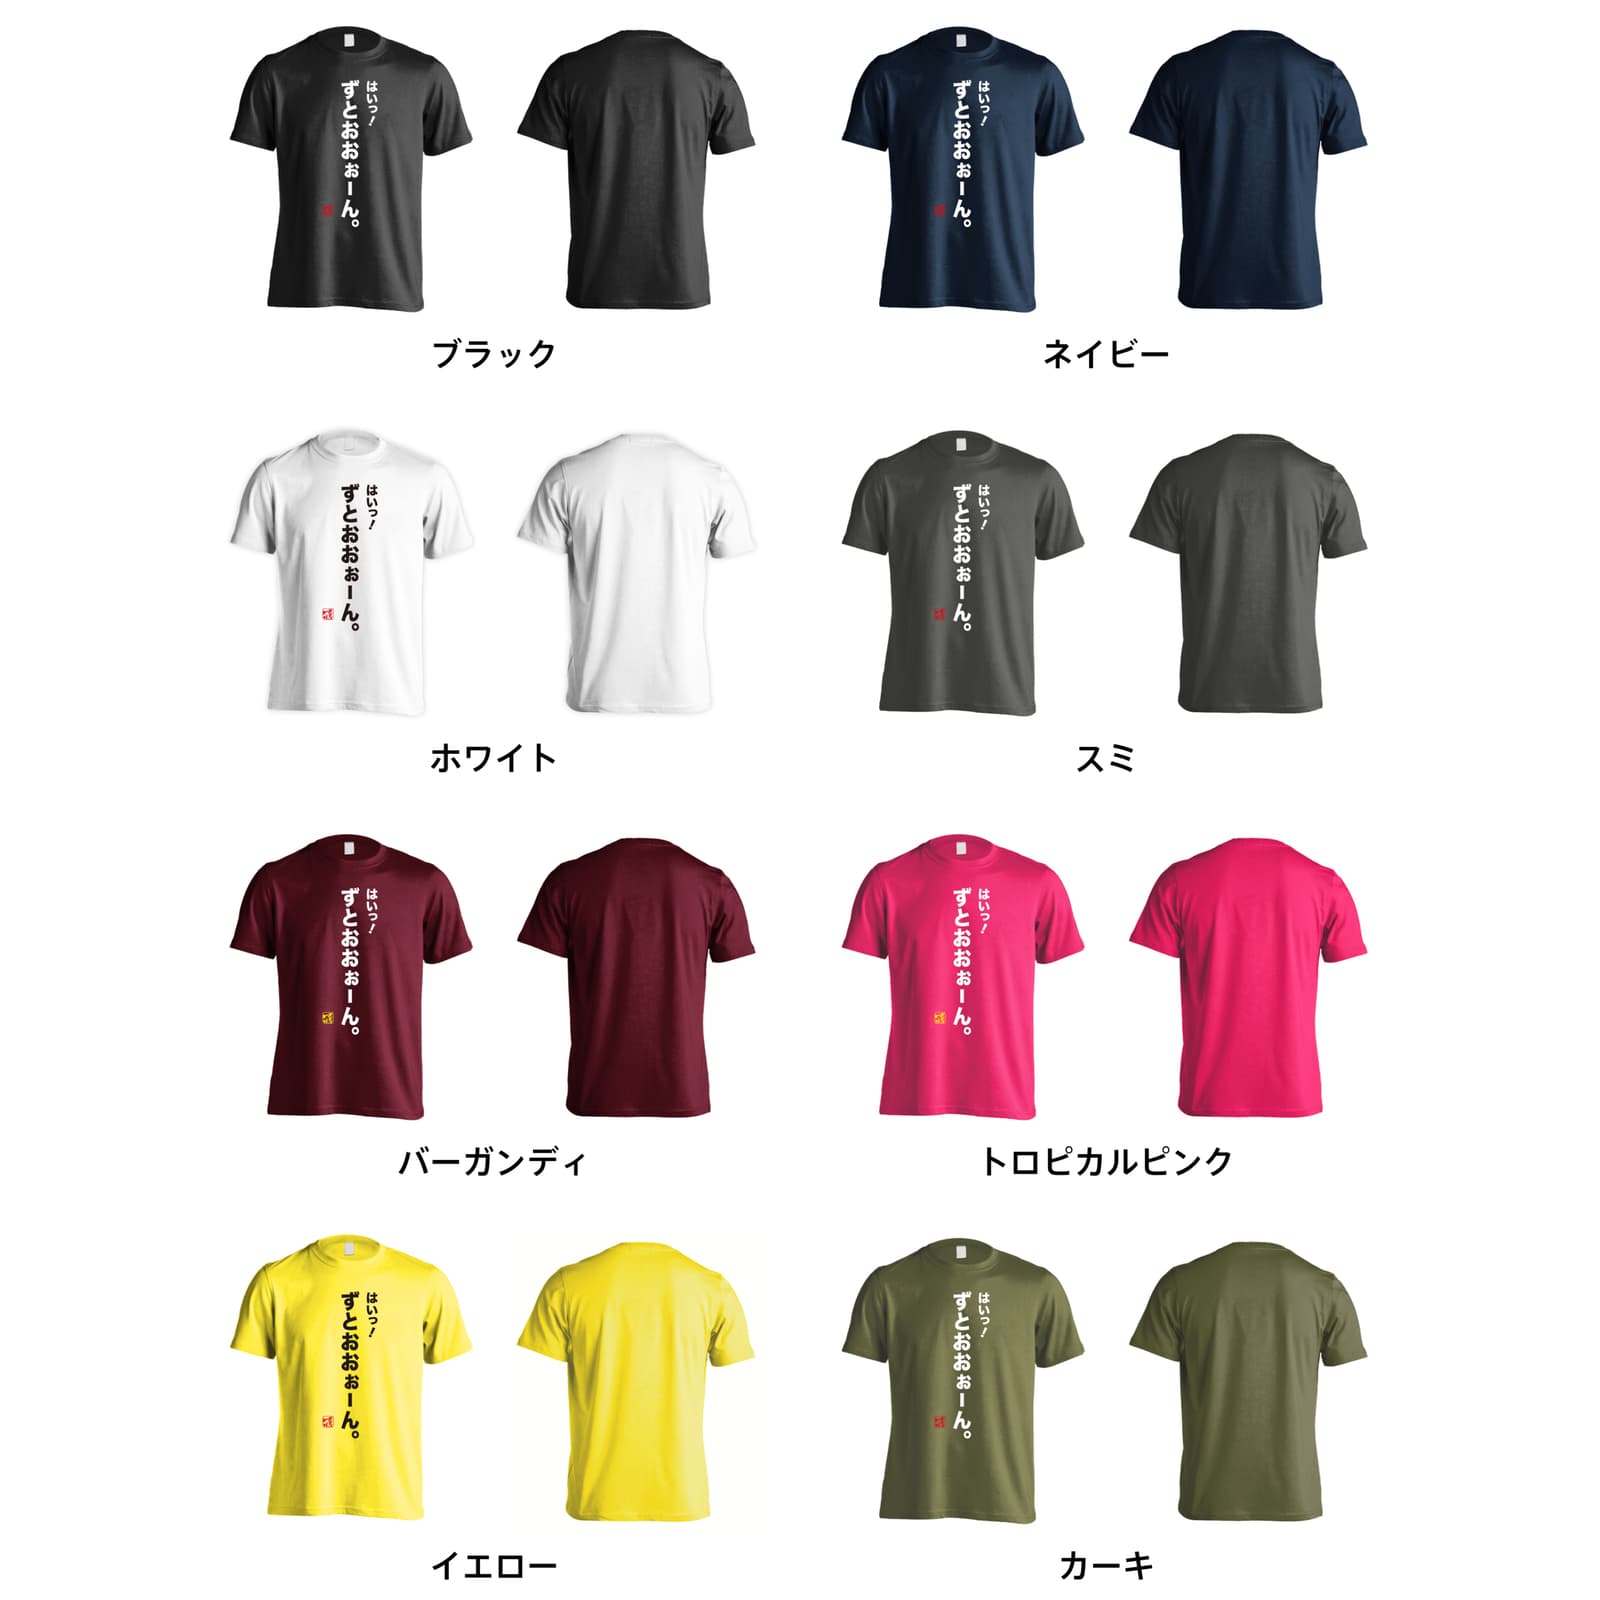 ボディビル ずとおおぉーん おもしろTシャツ 半袖Tシャツ コットン AW 